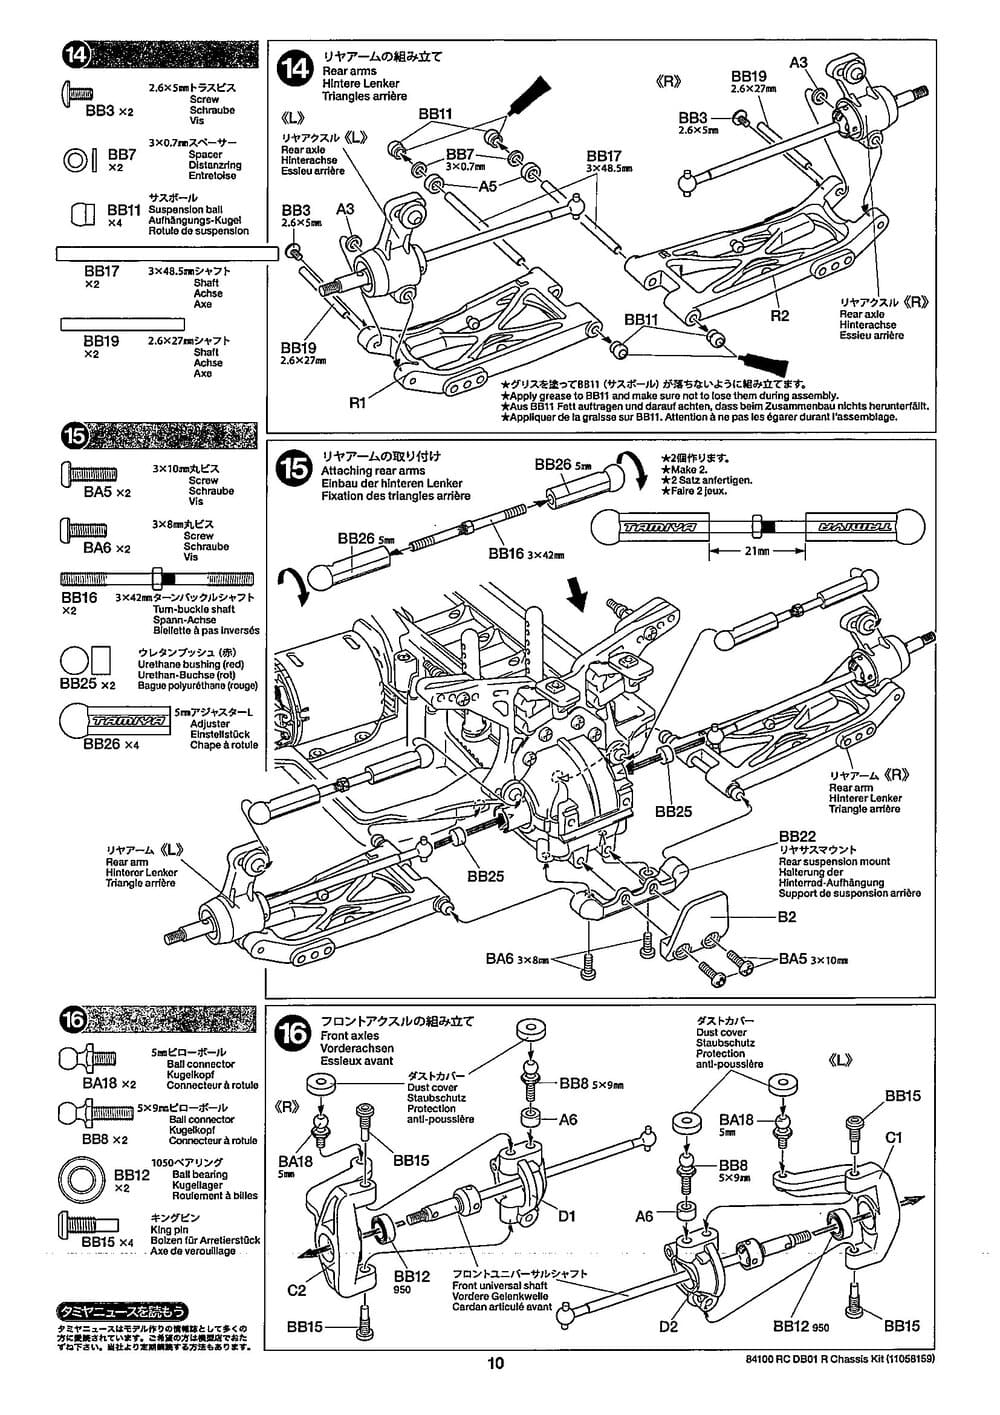 Tamiya - DB-01R Chassis - Manual - Page 10